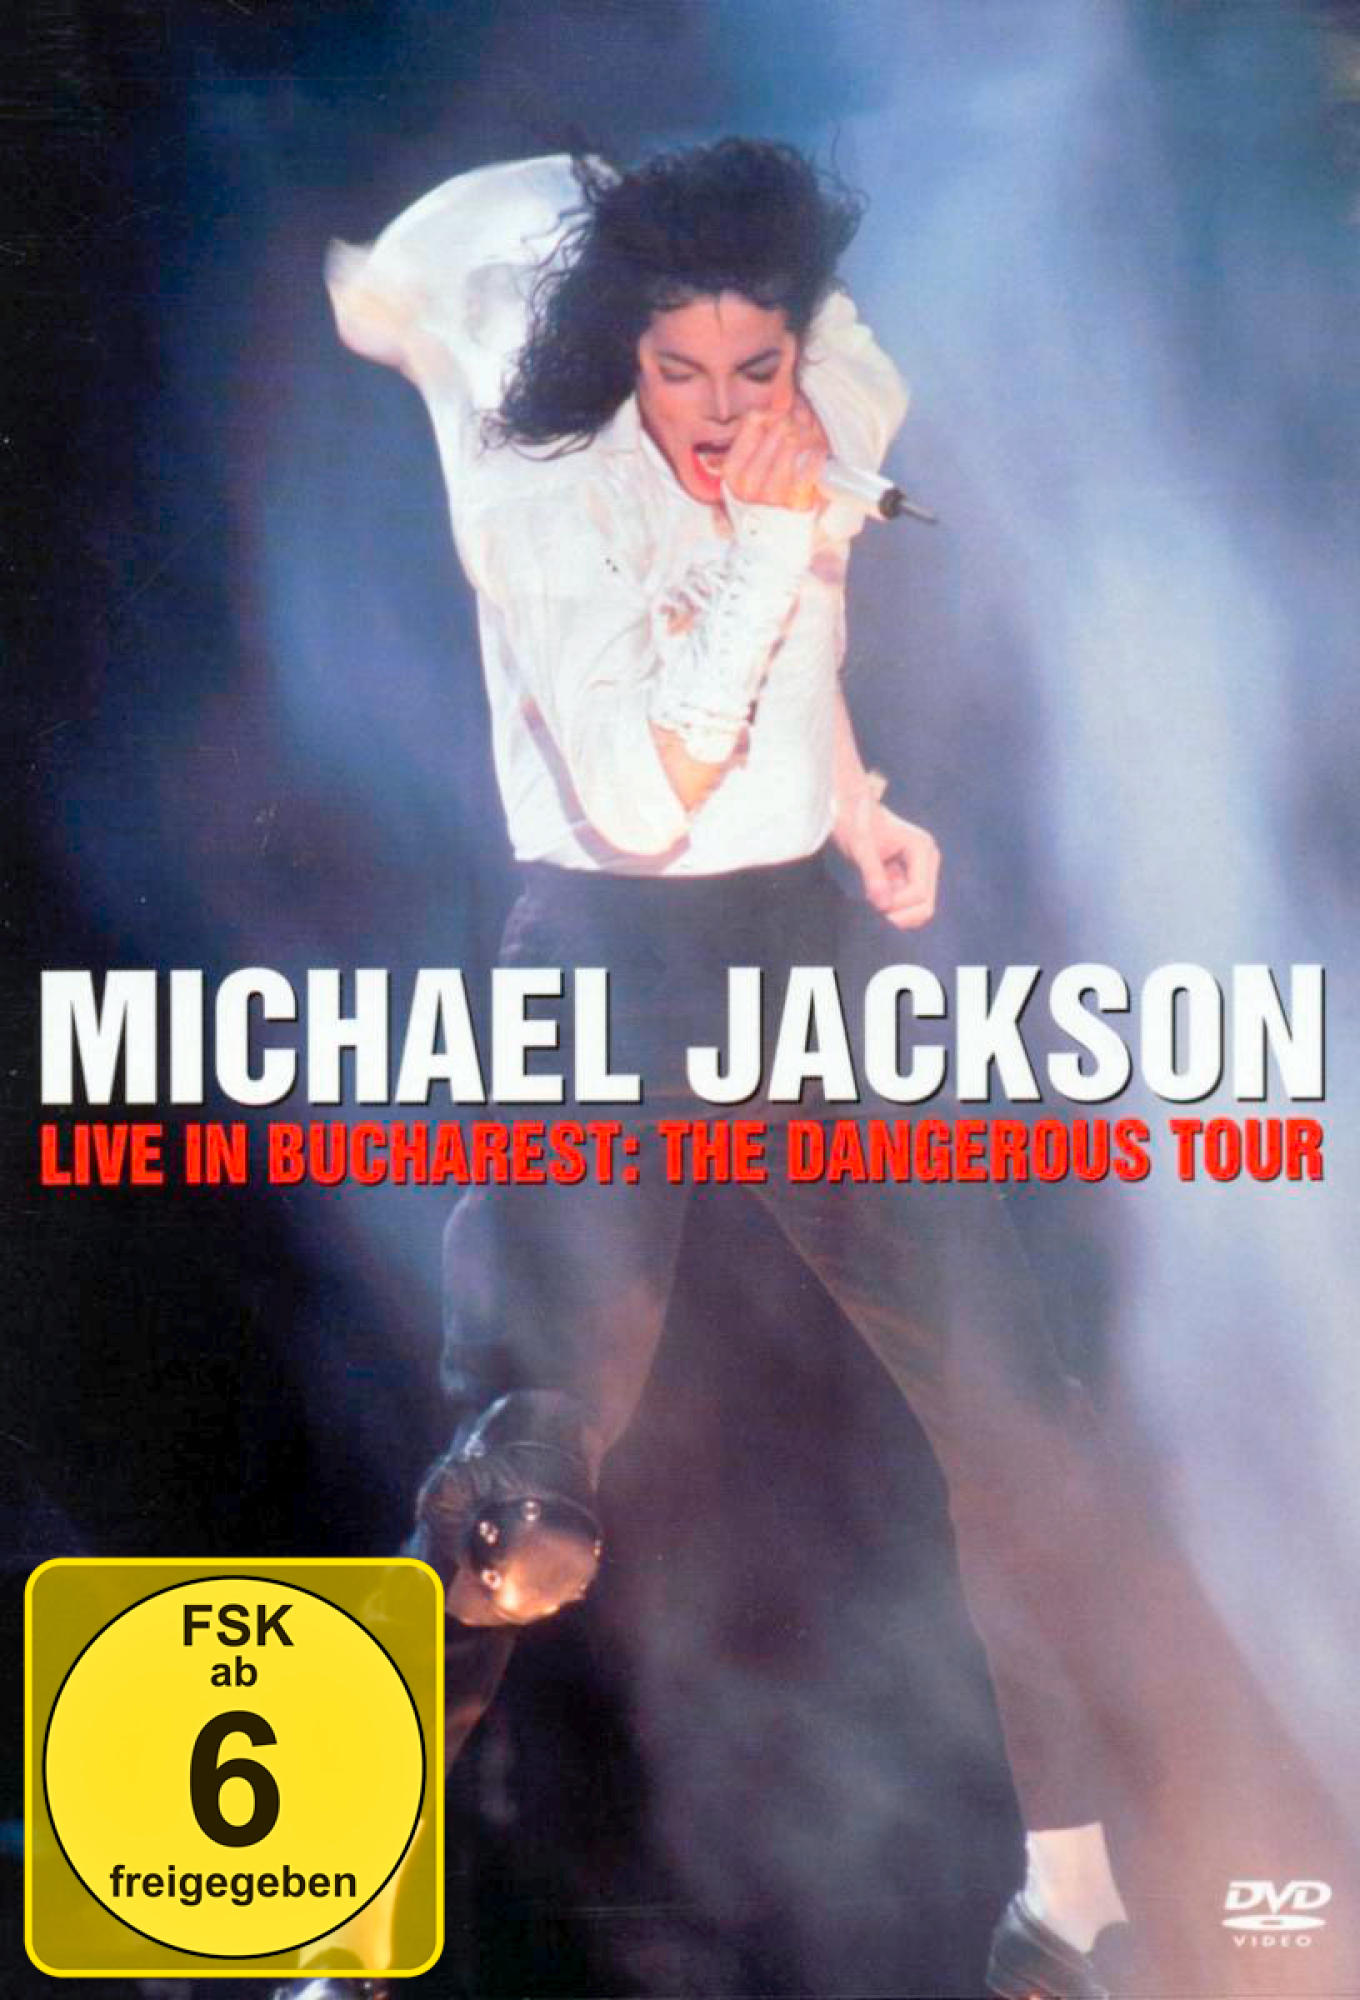 In Bucharest: Michael The Live (DVD) - Jackson Dangerous - Tour